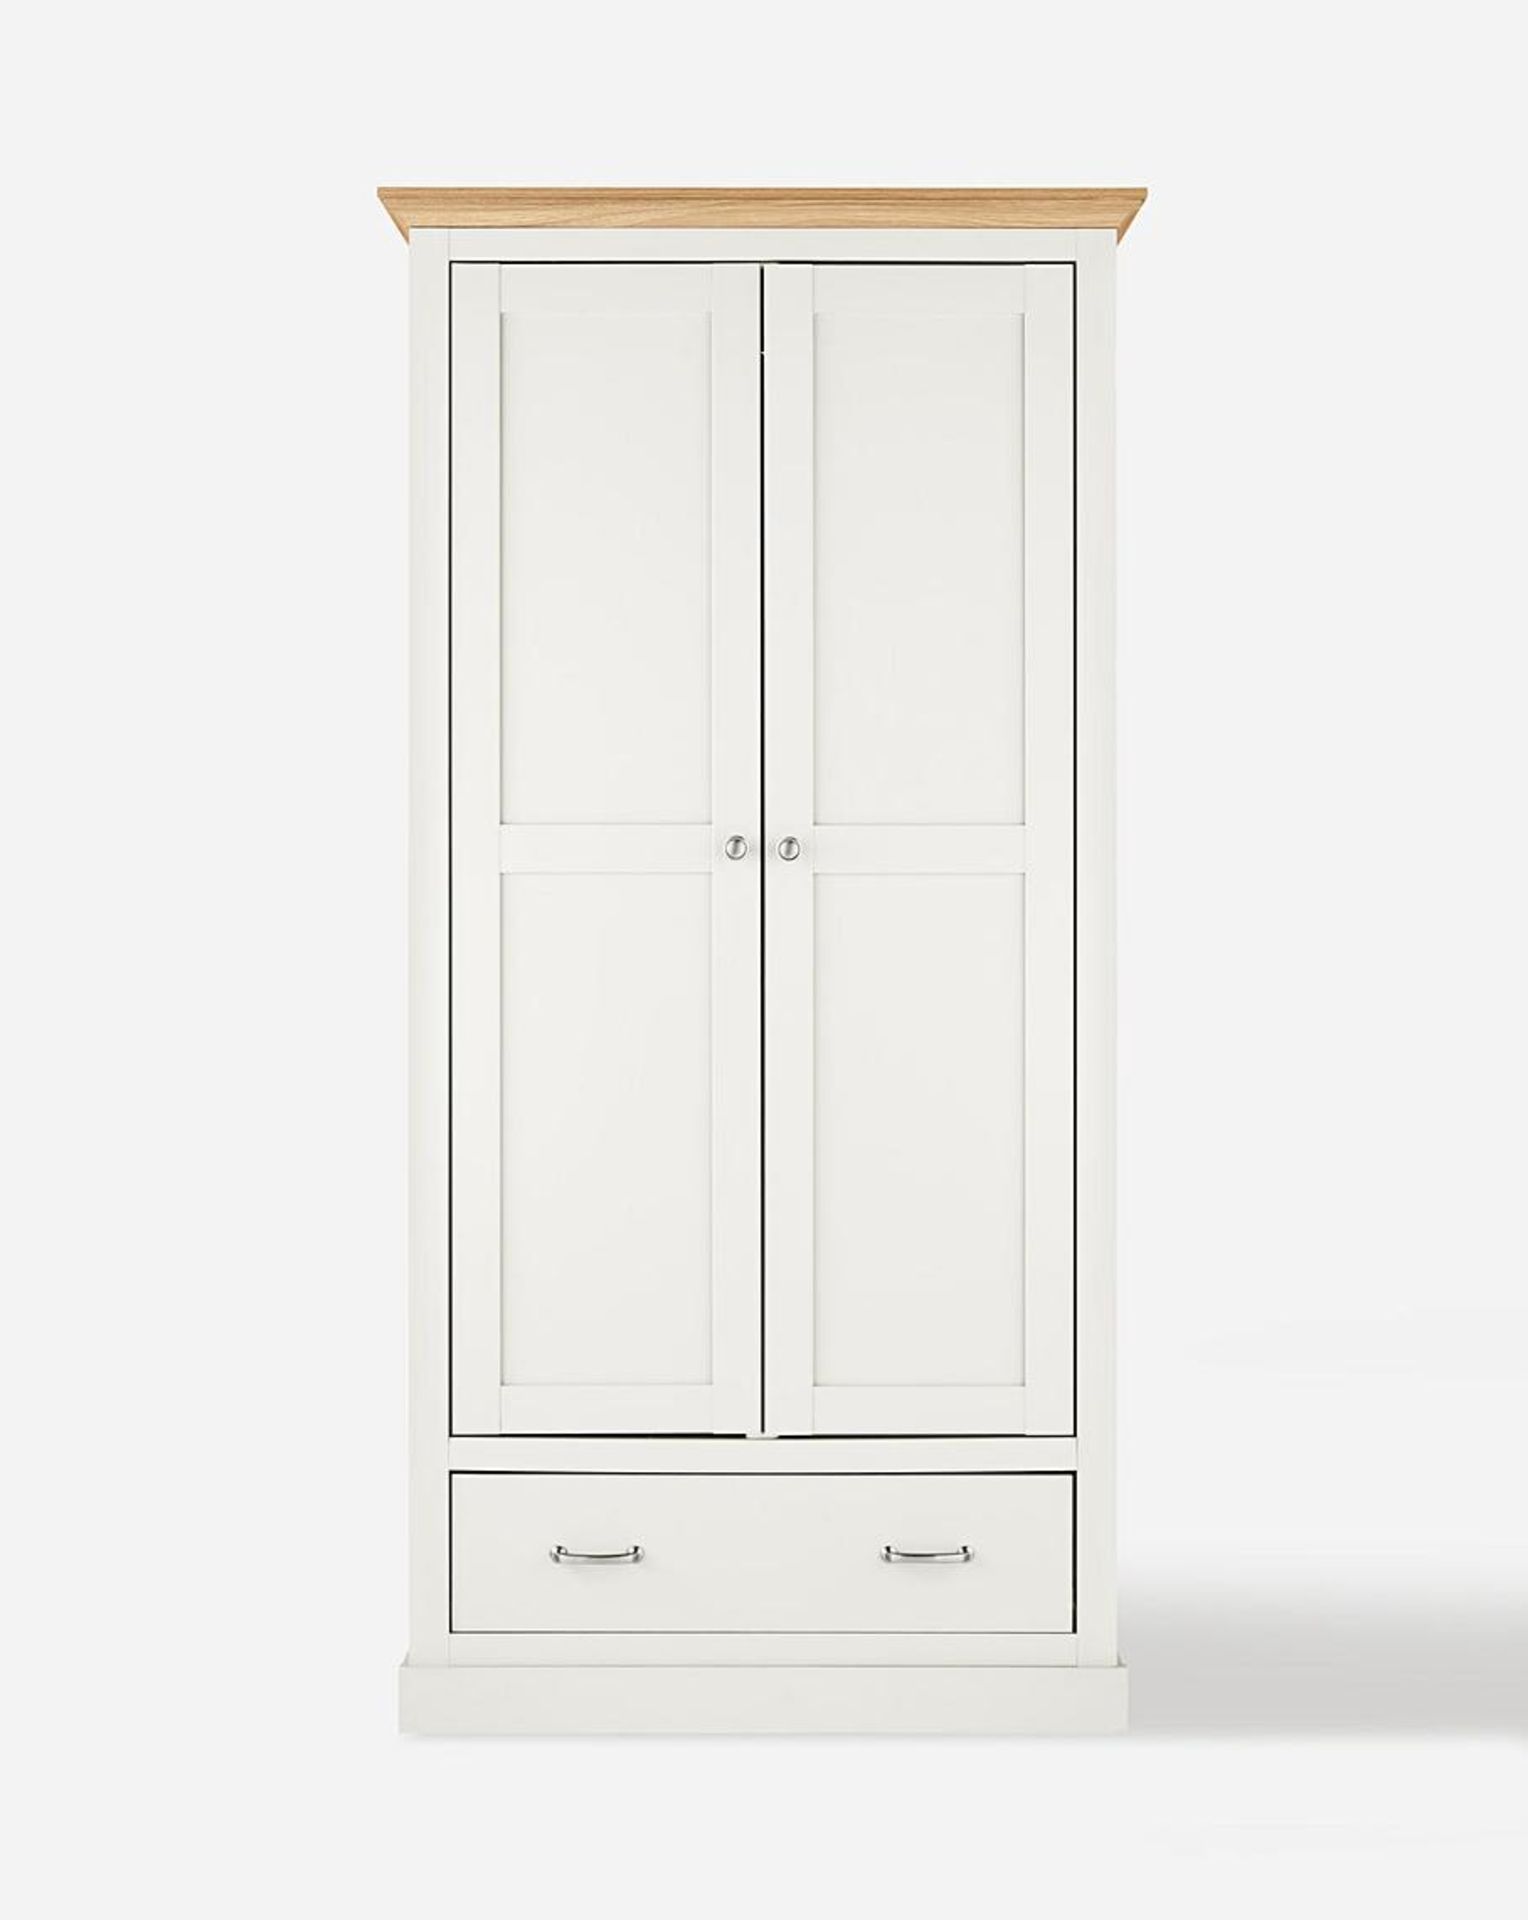 Julipa Ashford 2 Door 1 Drawer Wardrobe. RRP £399.00. - SR5. Featuring oak-effect tops which is